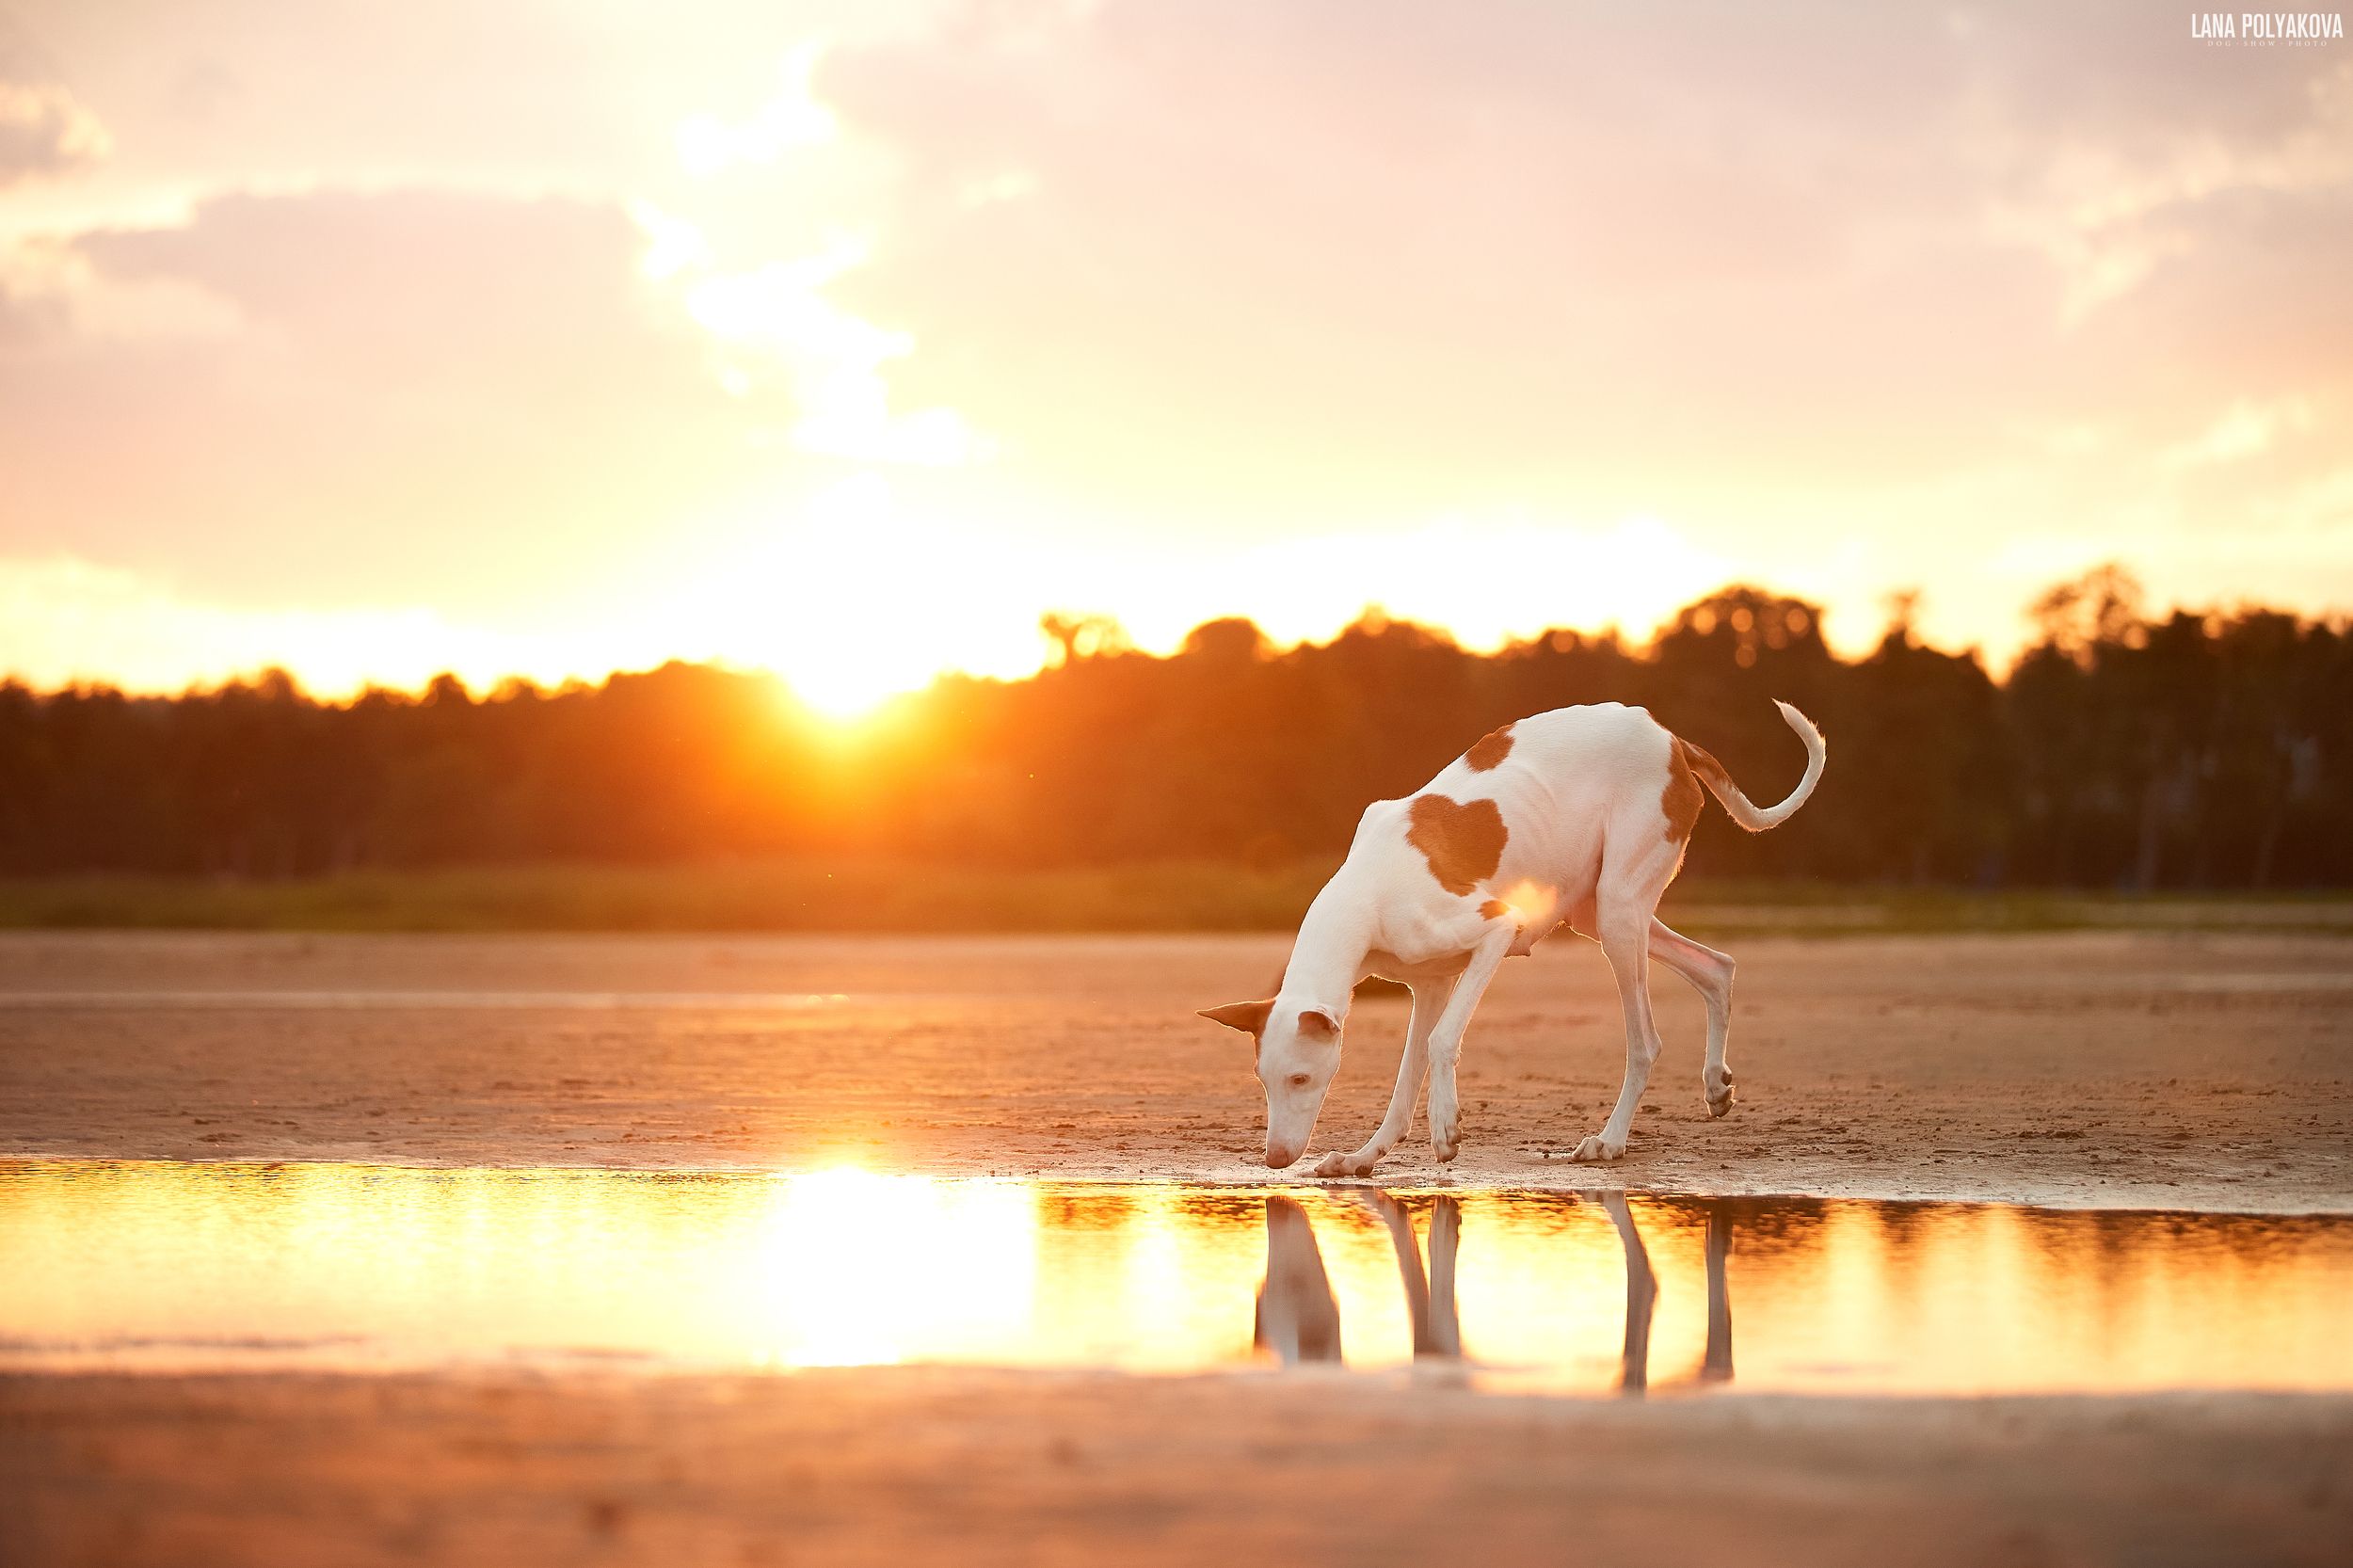 собака, поженко, поденко ибиценко, рассвет, пляж, Лана Полякова